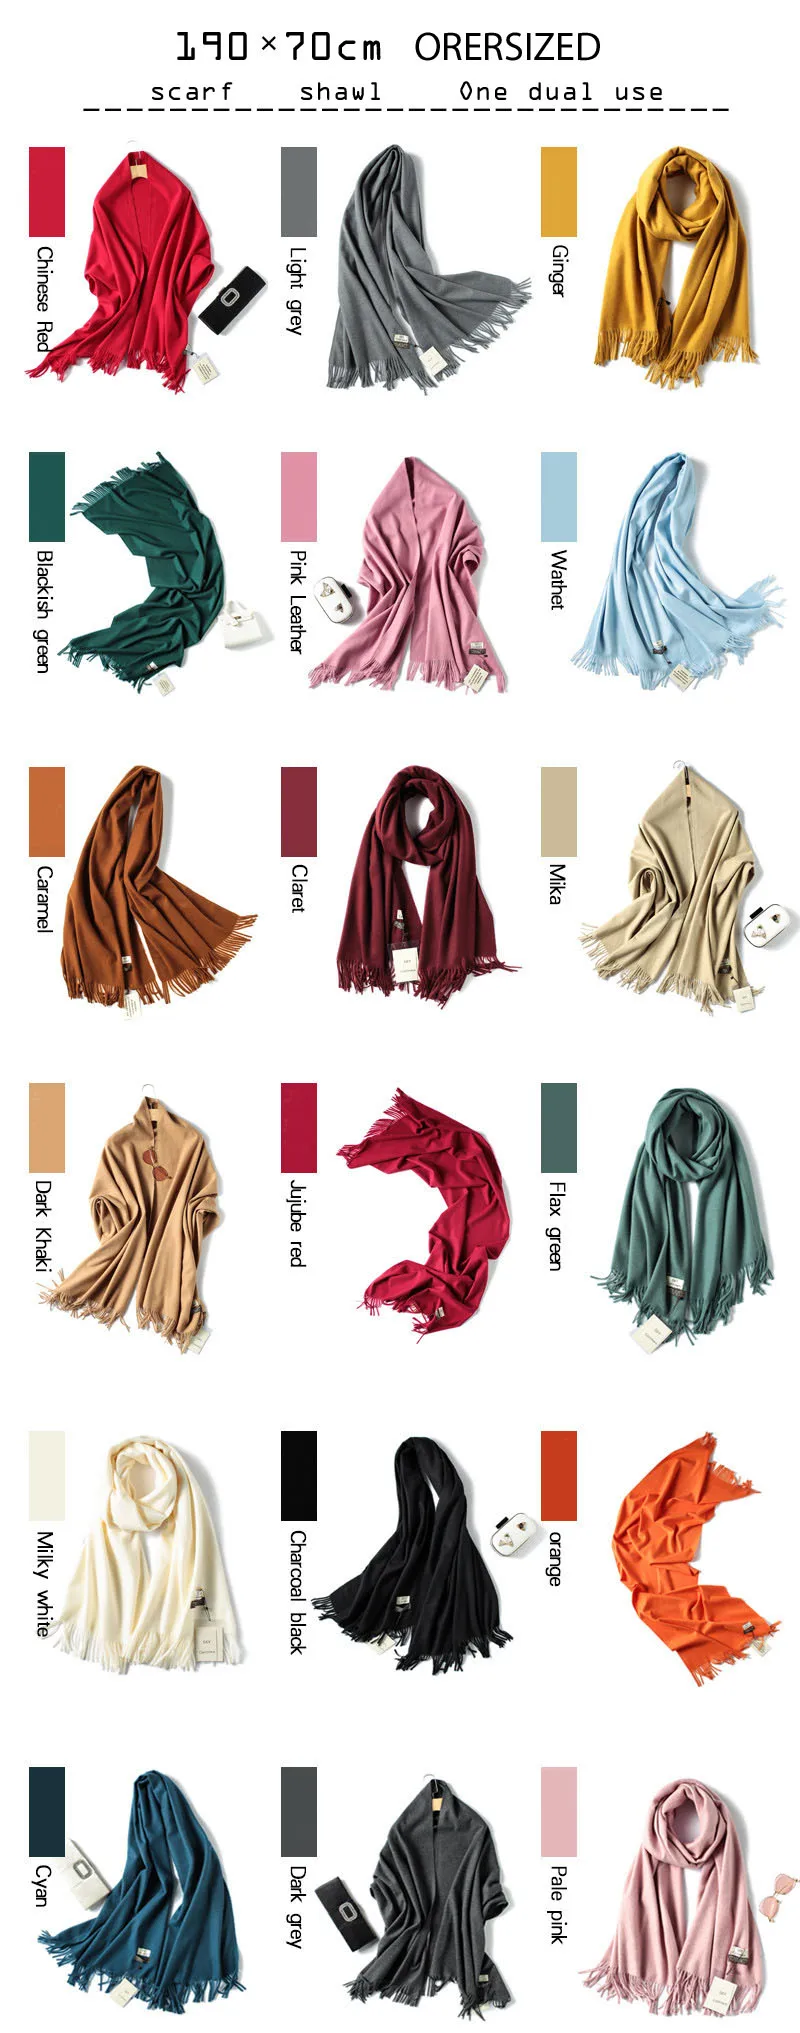 REALSISHOW осень зима кашемир однотонного цвета шарф 2019 Модный женский шарф Роскошные кашемировые шарфы женские теплые шали оптом